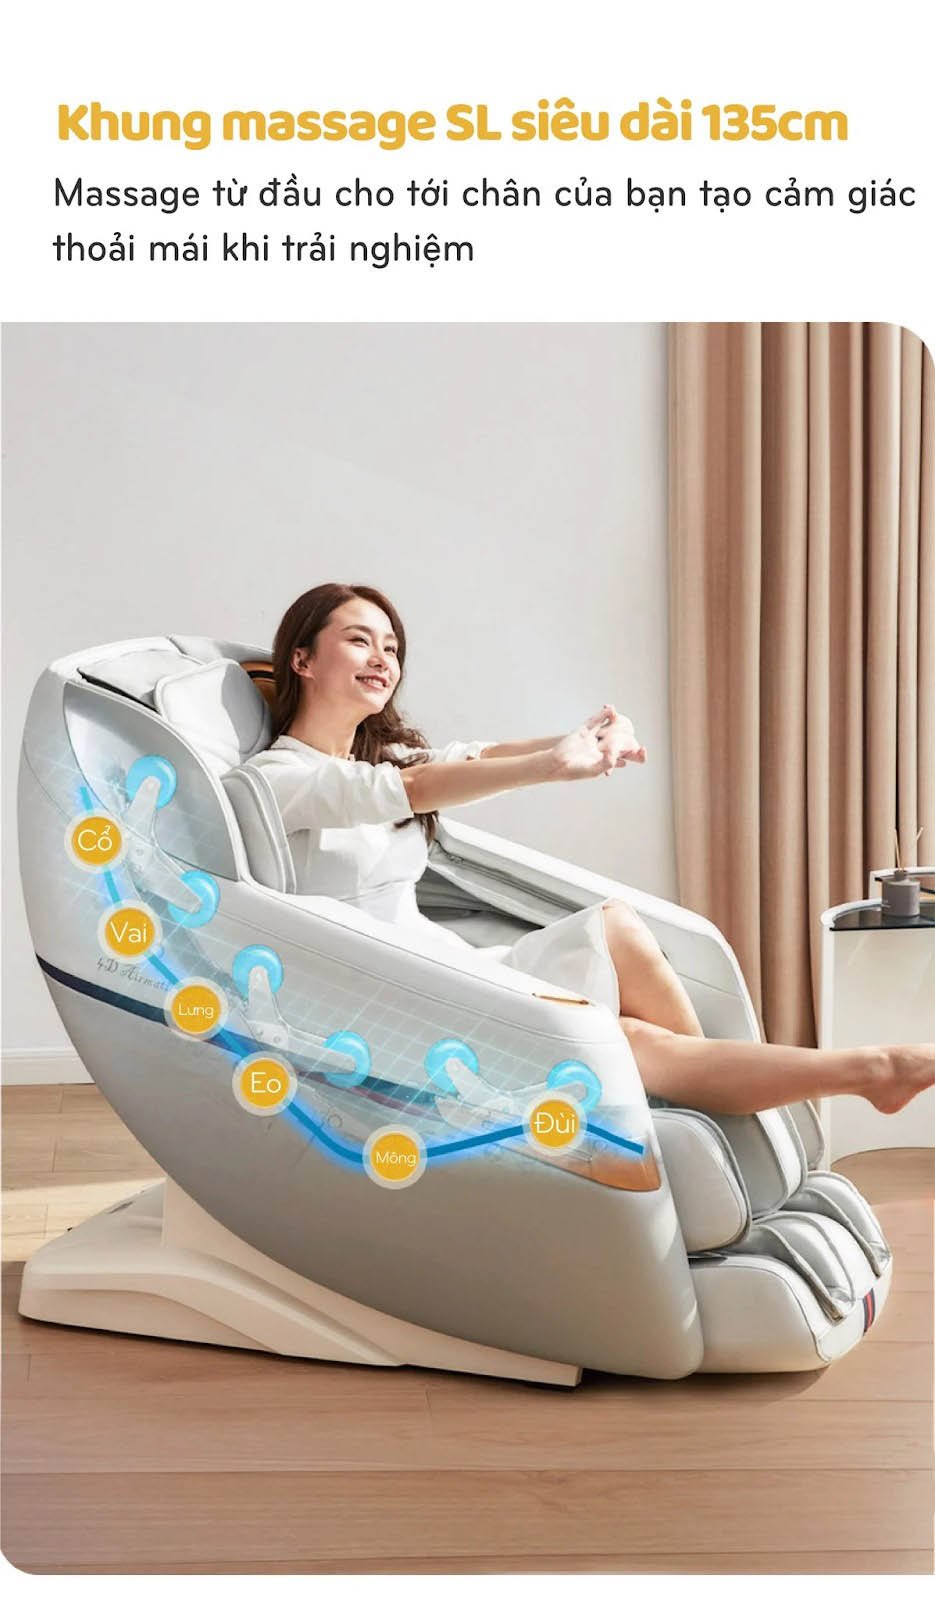 Khung ray ghế massage OKINAWA OS - 4500